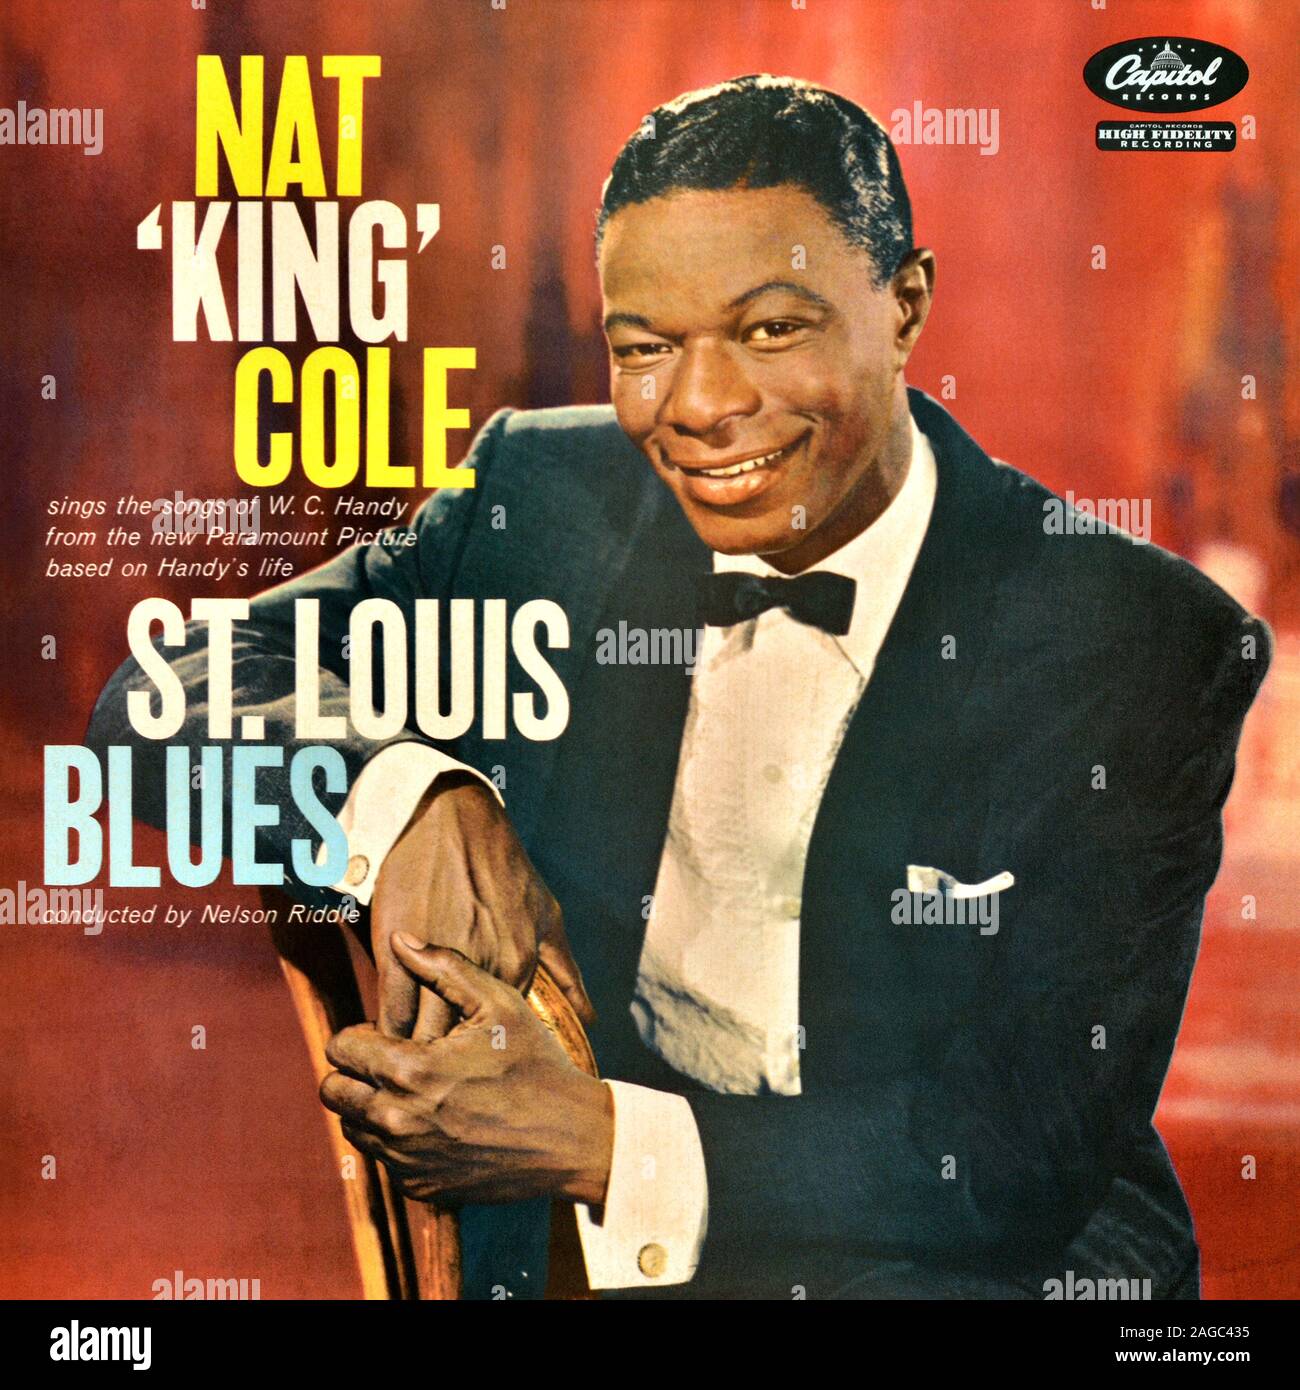 Nat King Cole - original vinyl album cover - St. Louis Blues - 1958 Stock Photo